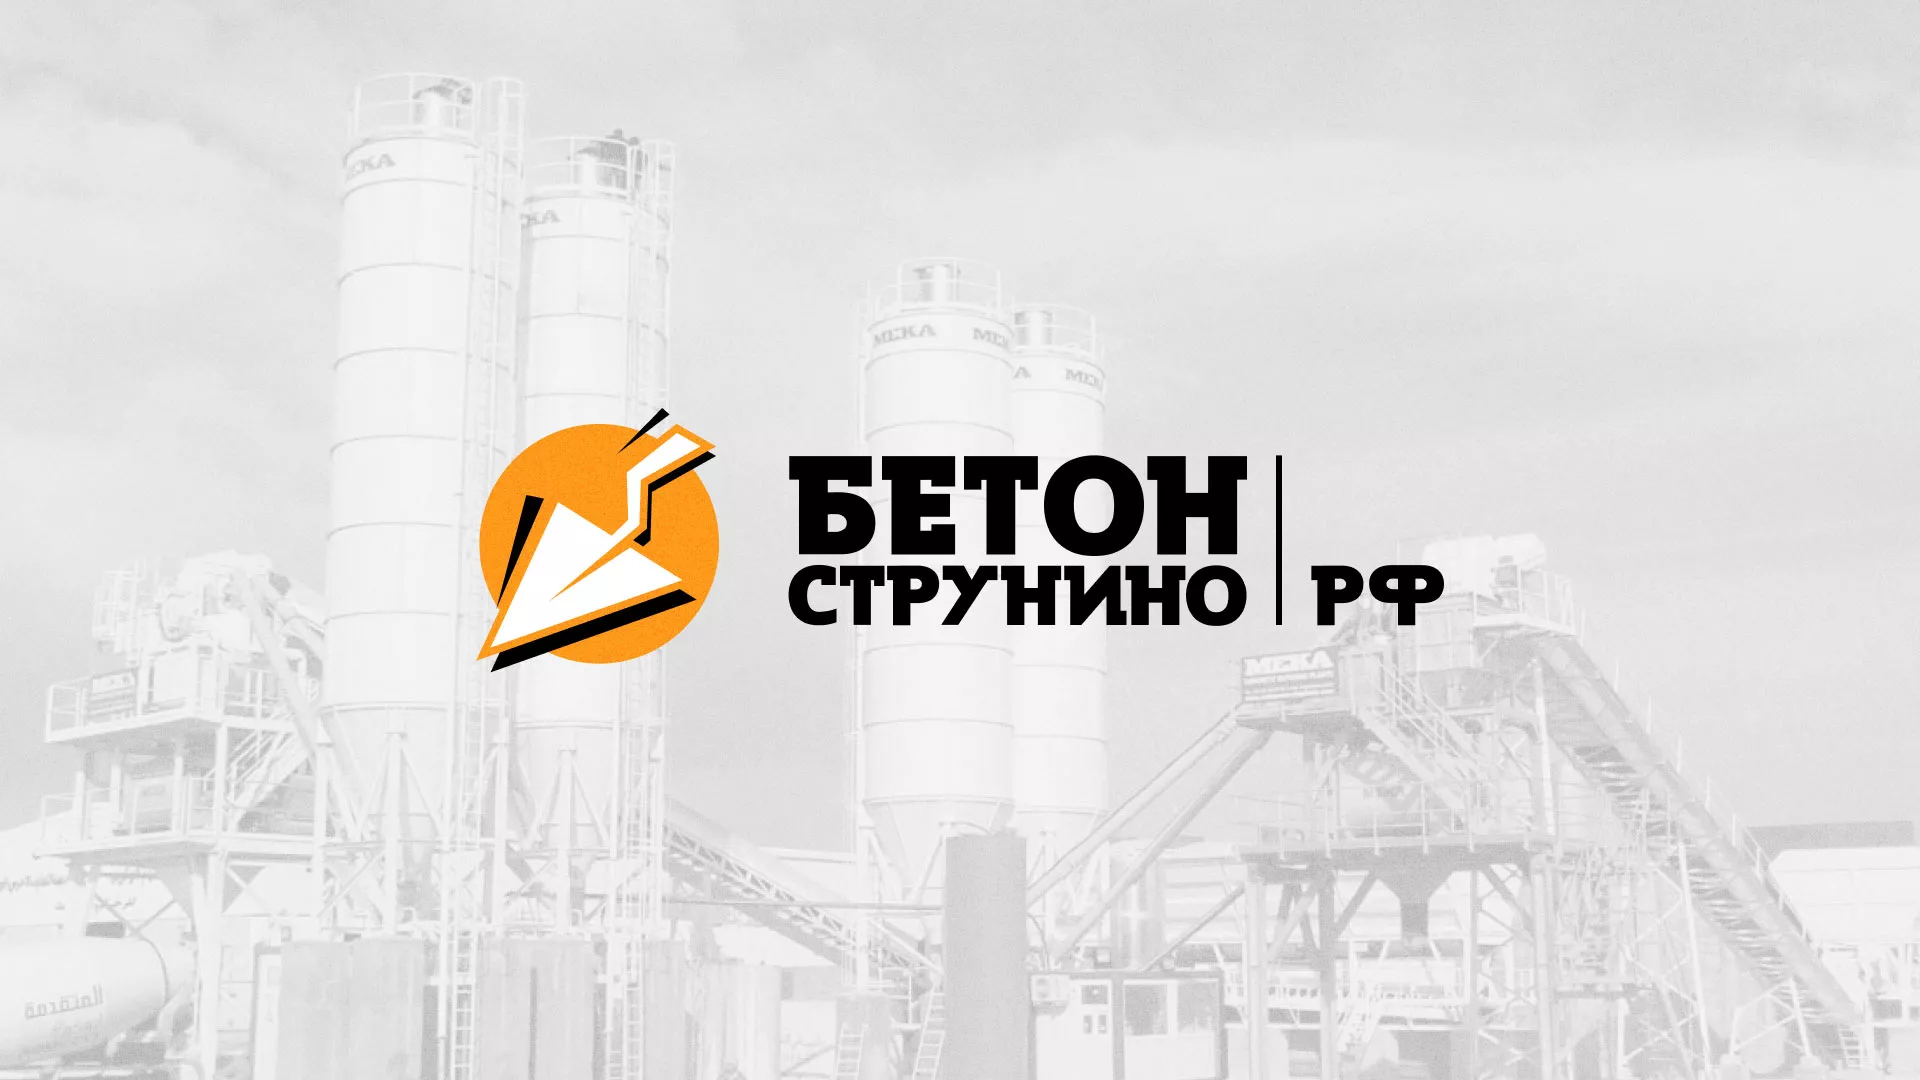 Разработка логотипа для бетонного завода в Пушкино